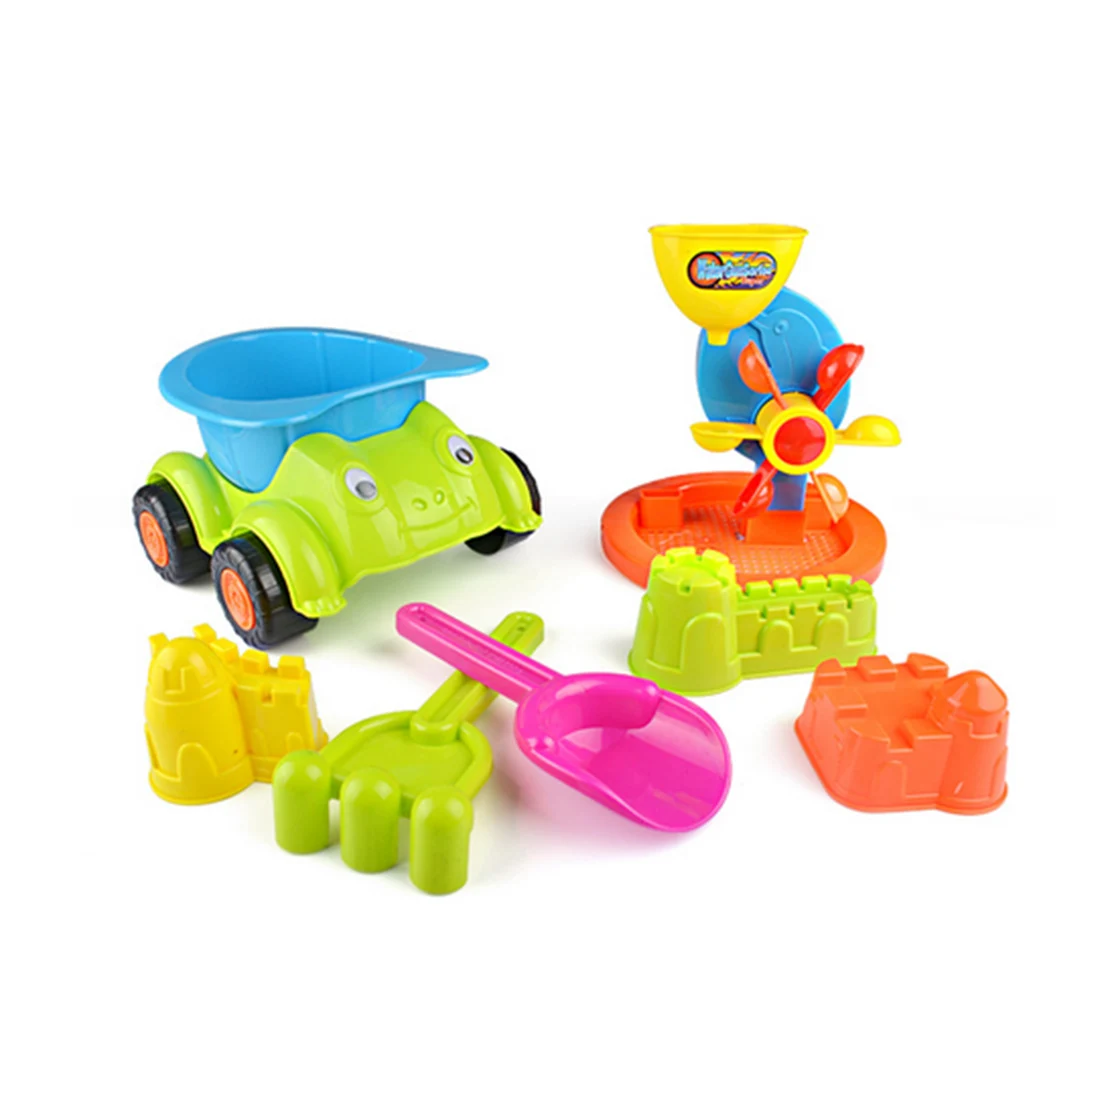 7 в 1 большой пляжная игрушка автомобиль комплект Пластик пляжные играть в игрушки для детей Подарки-разные цвета